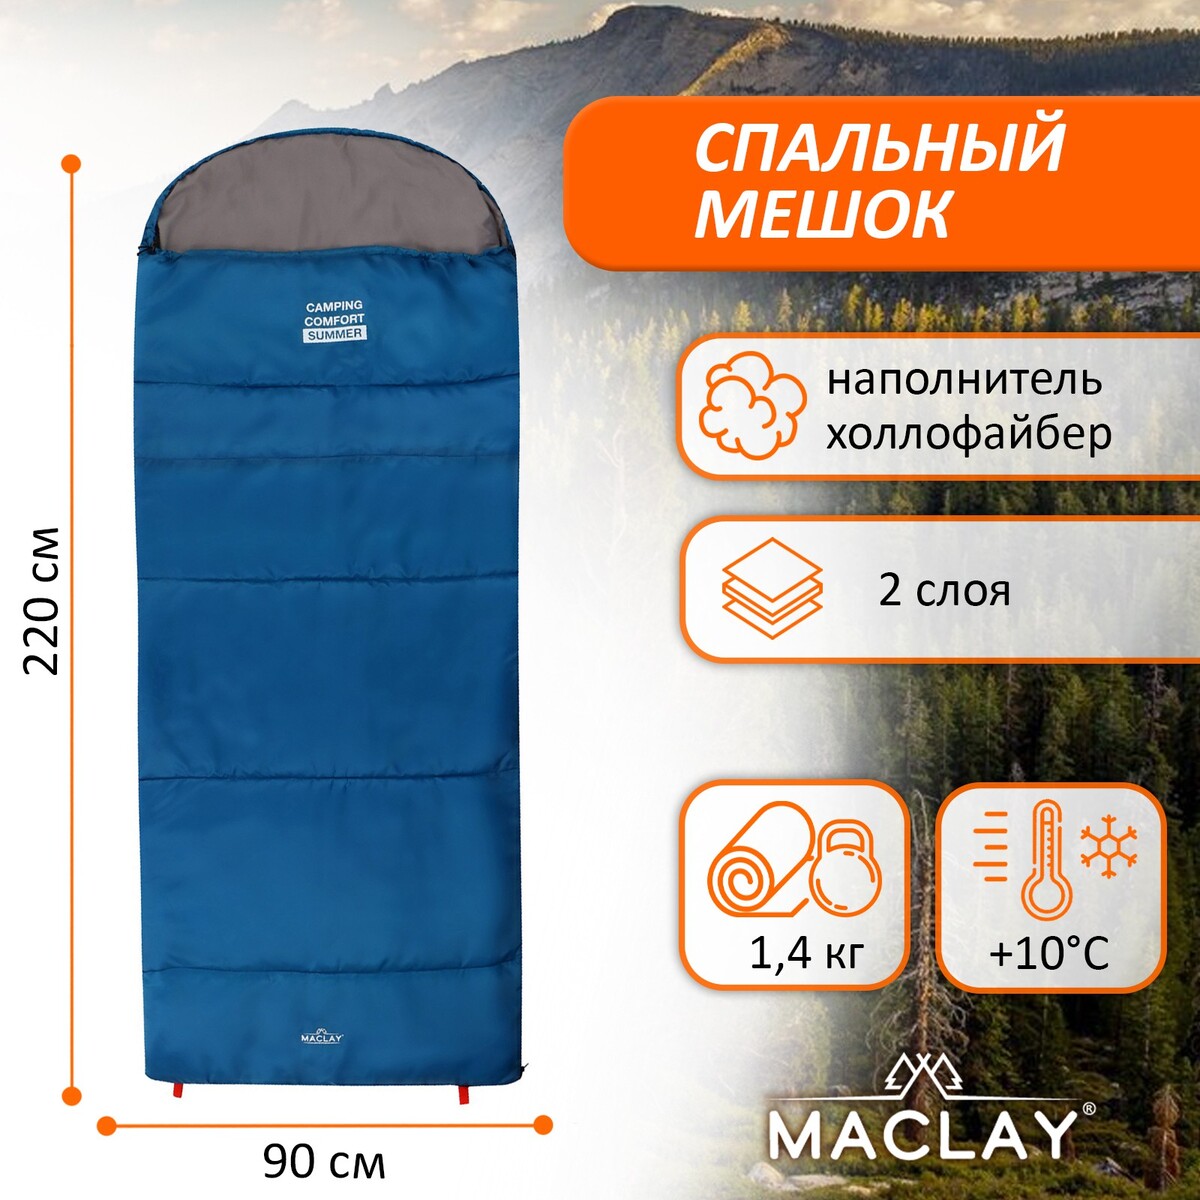 Спальный мешок maclay camping comfort summer, 2 слоя, левый, с подголовником, 220х90 см, +10/+25°с